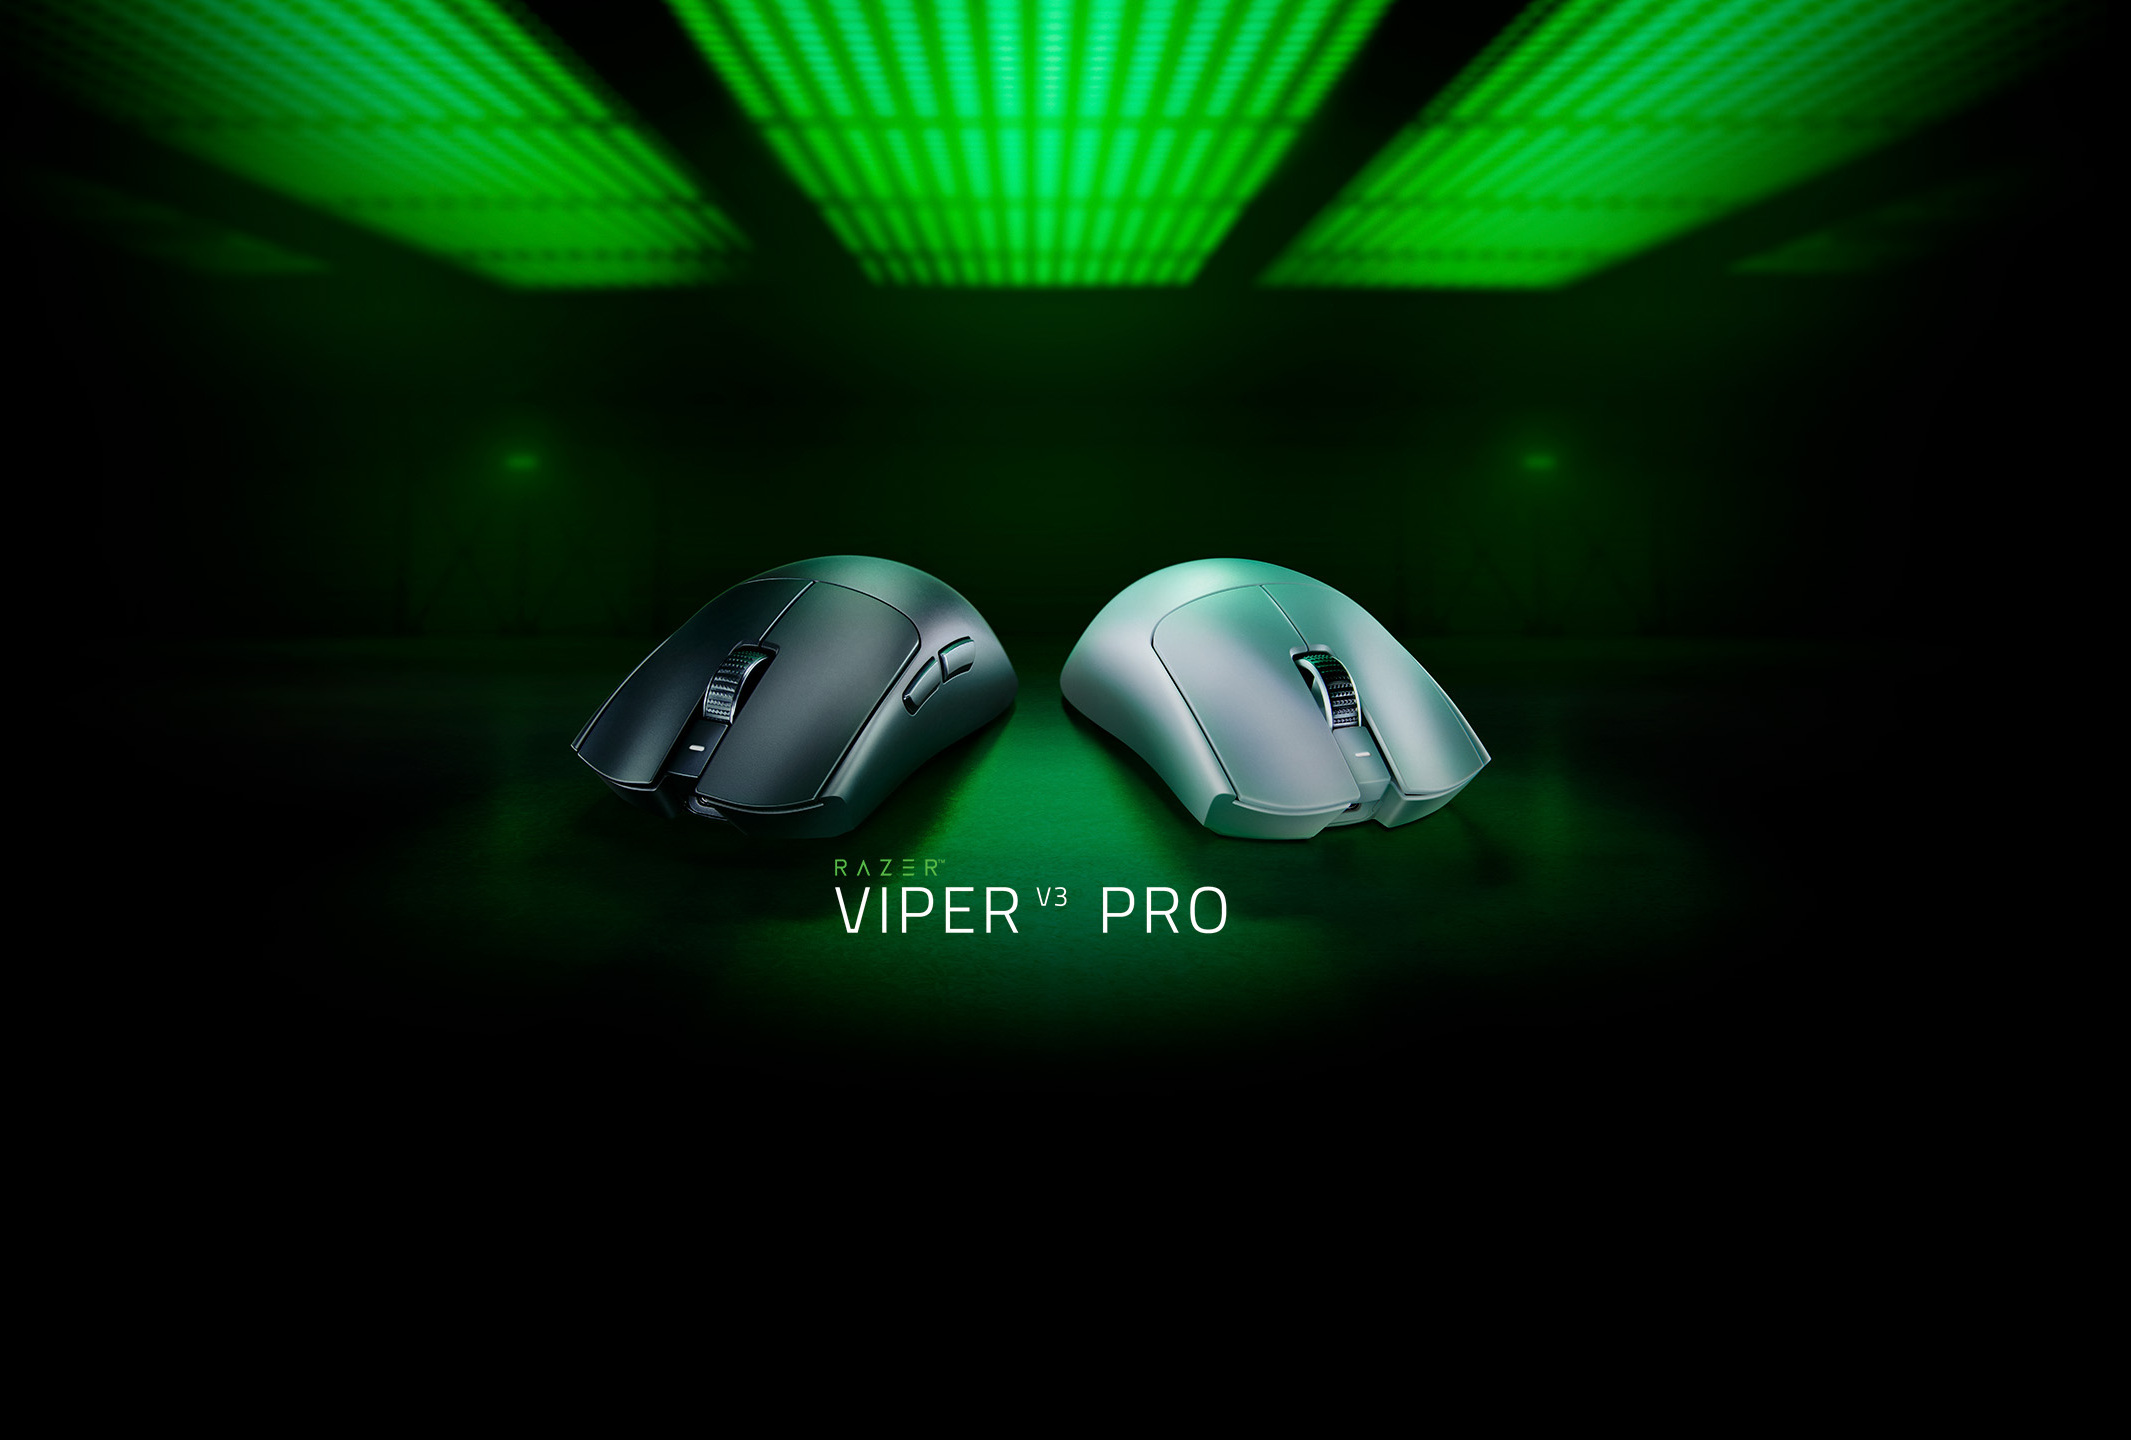 RAZER VIPER V3 PRO | For The Pro: Lighter, Faster, Better